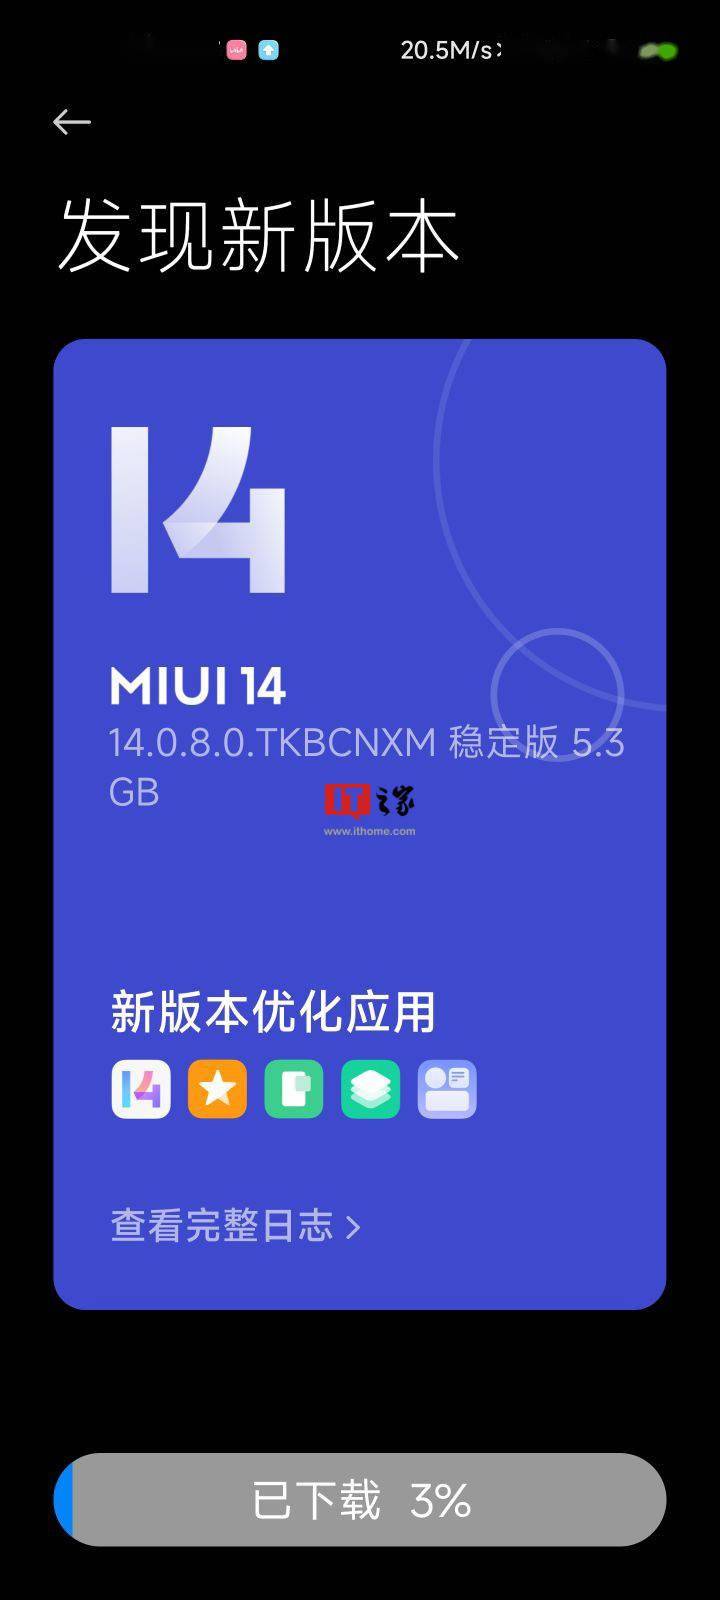 小米11手机开始推送 MIUI 14 稳定版系统 14.0.8.0.TKBCNXM更新